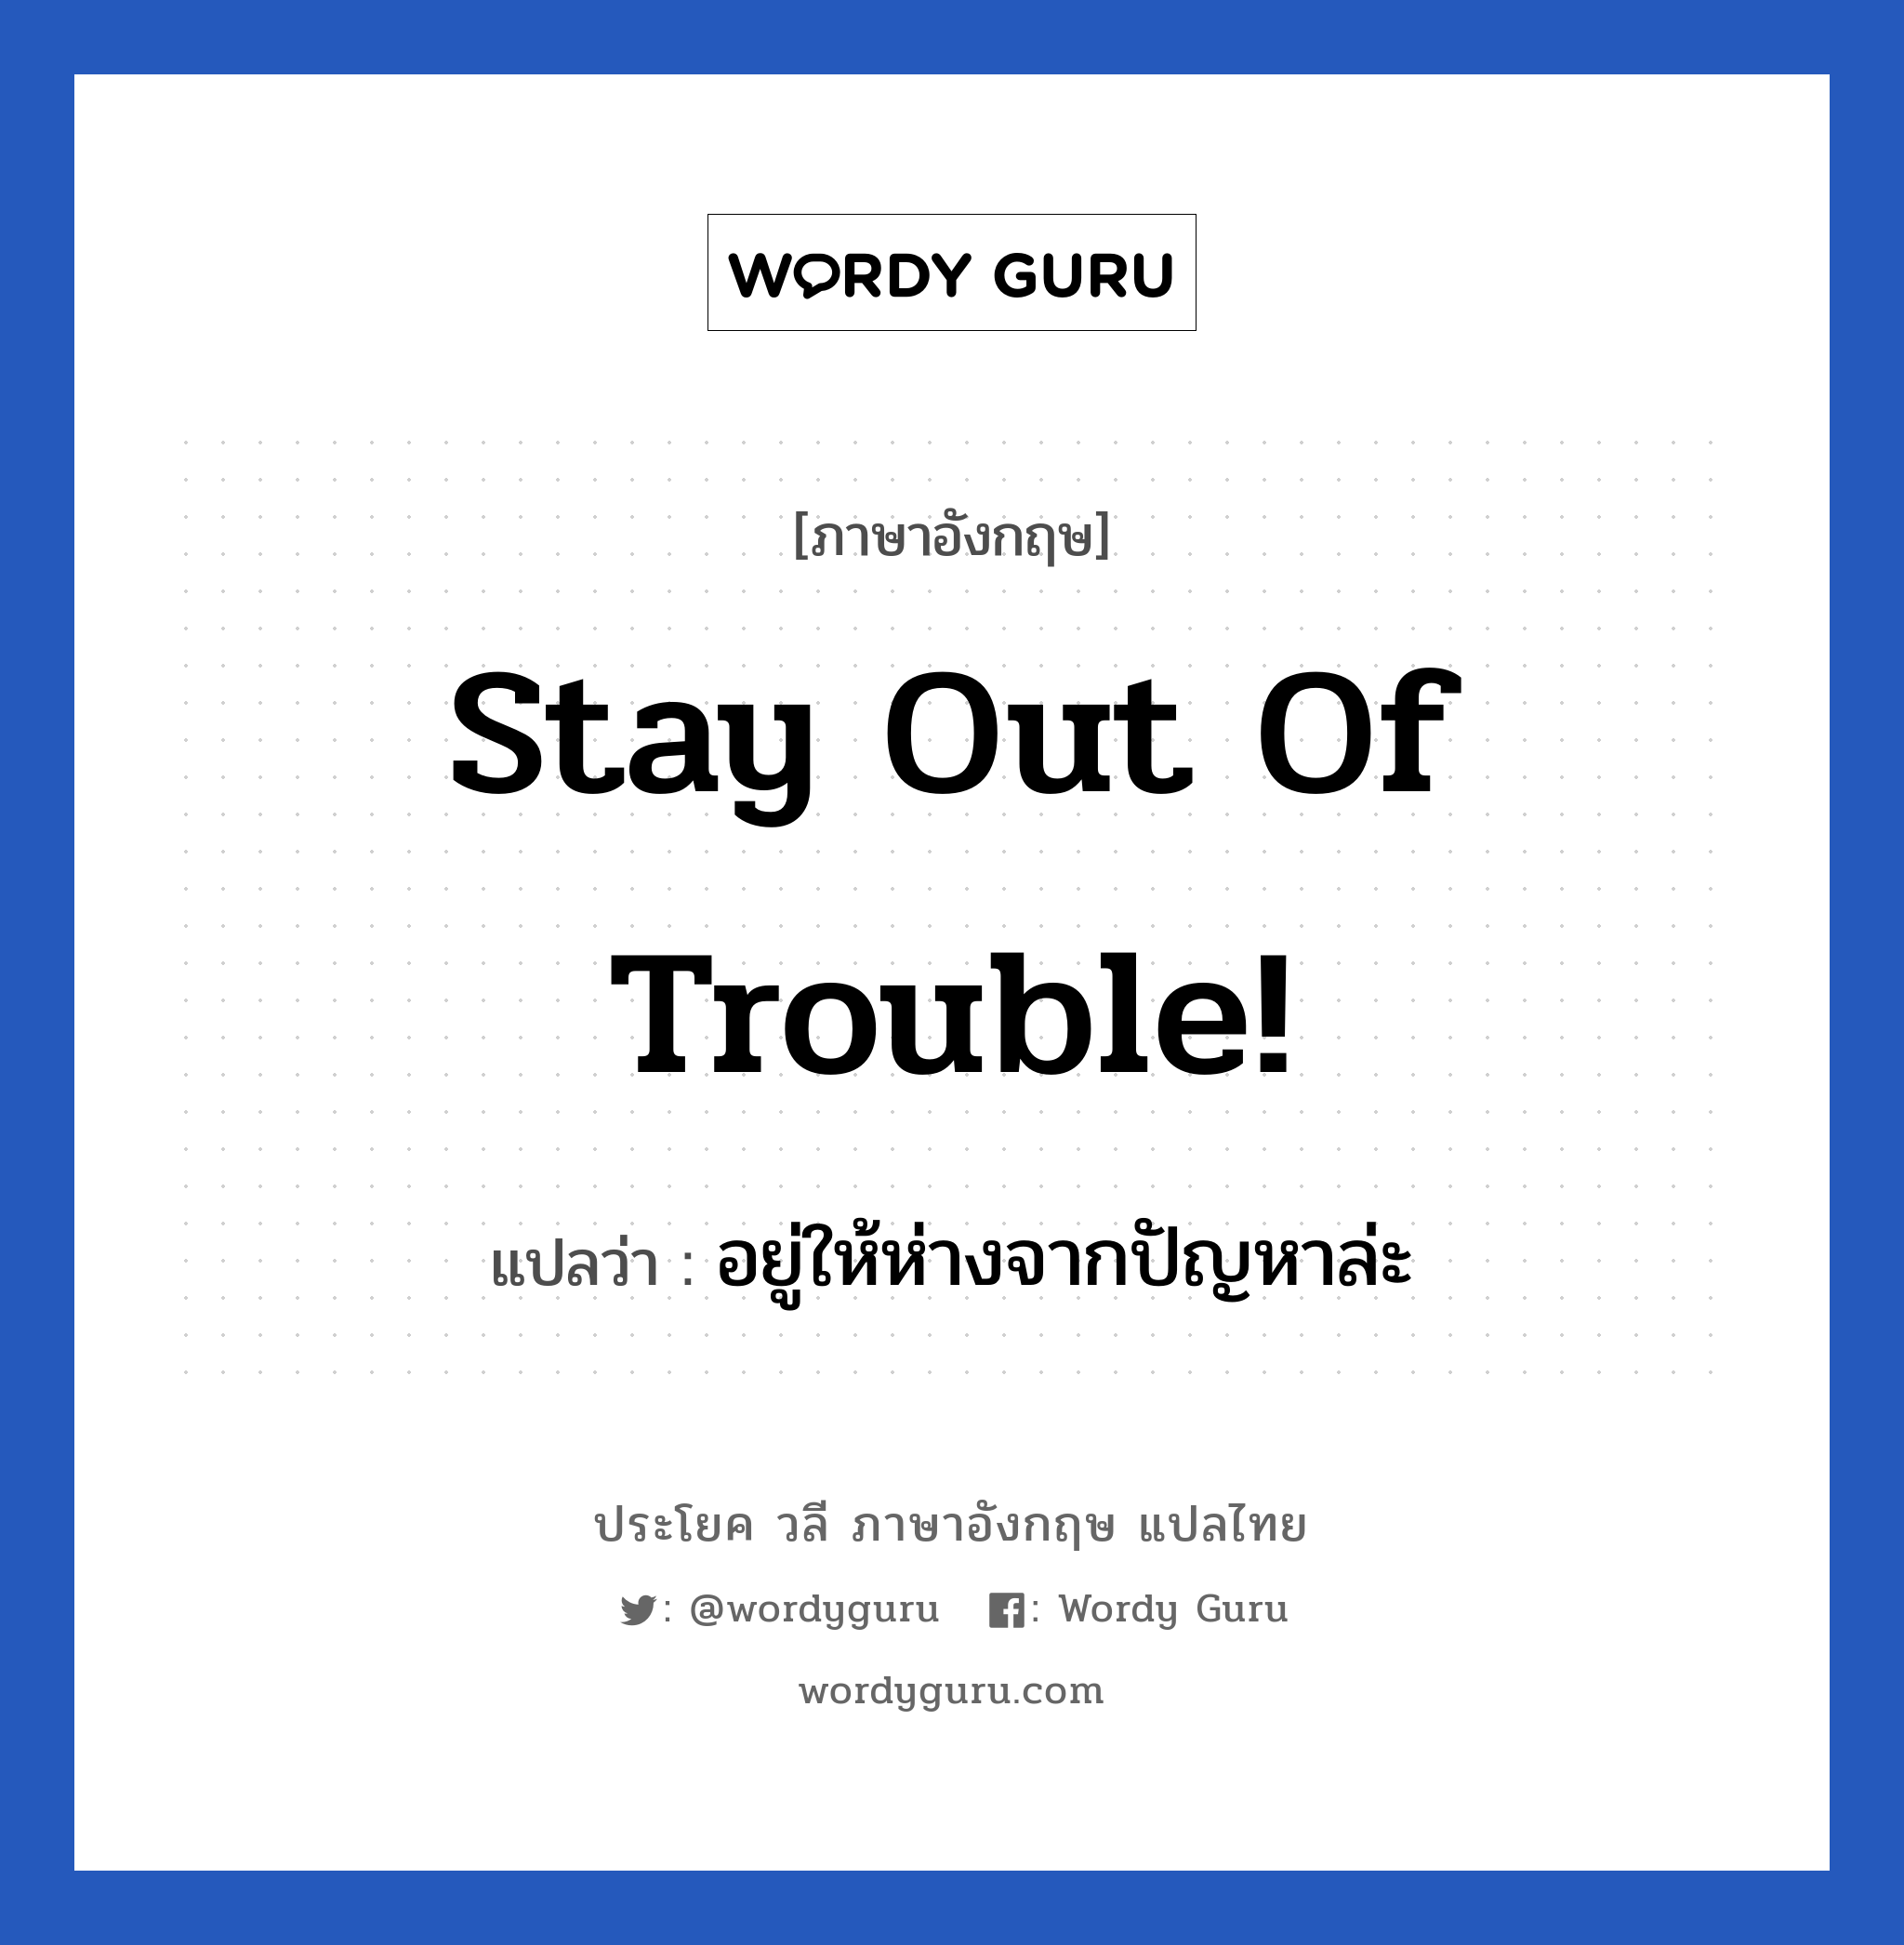 Stay out of trouble! แปลว่า? เป็นประโยคในกลุ่มประเภท เป็นห่วง, วลีภาษาอังกฤษ Stay out of trouble! แปลว่า อยู่ให้ห่างจากปัญหาล่ะ หมวด เป็นห่วง